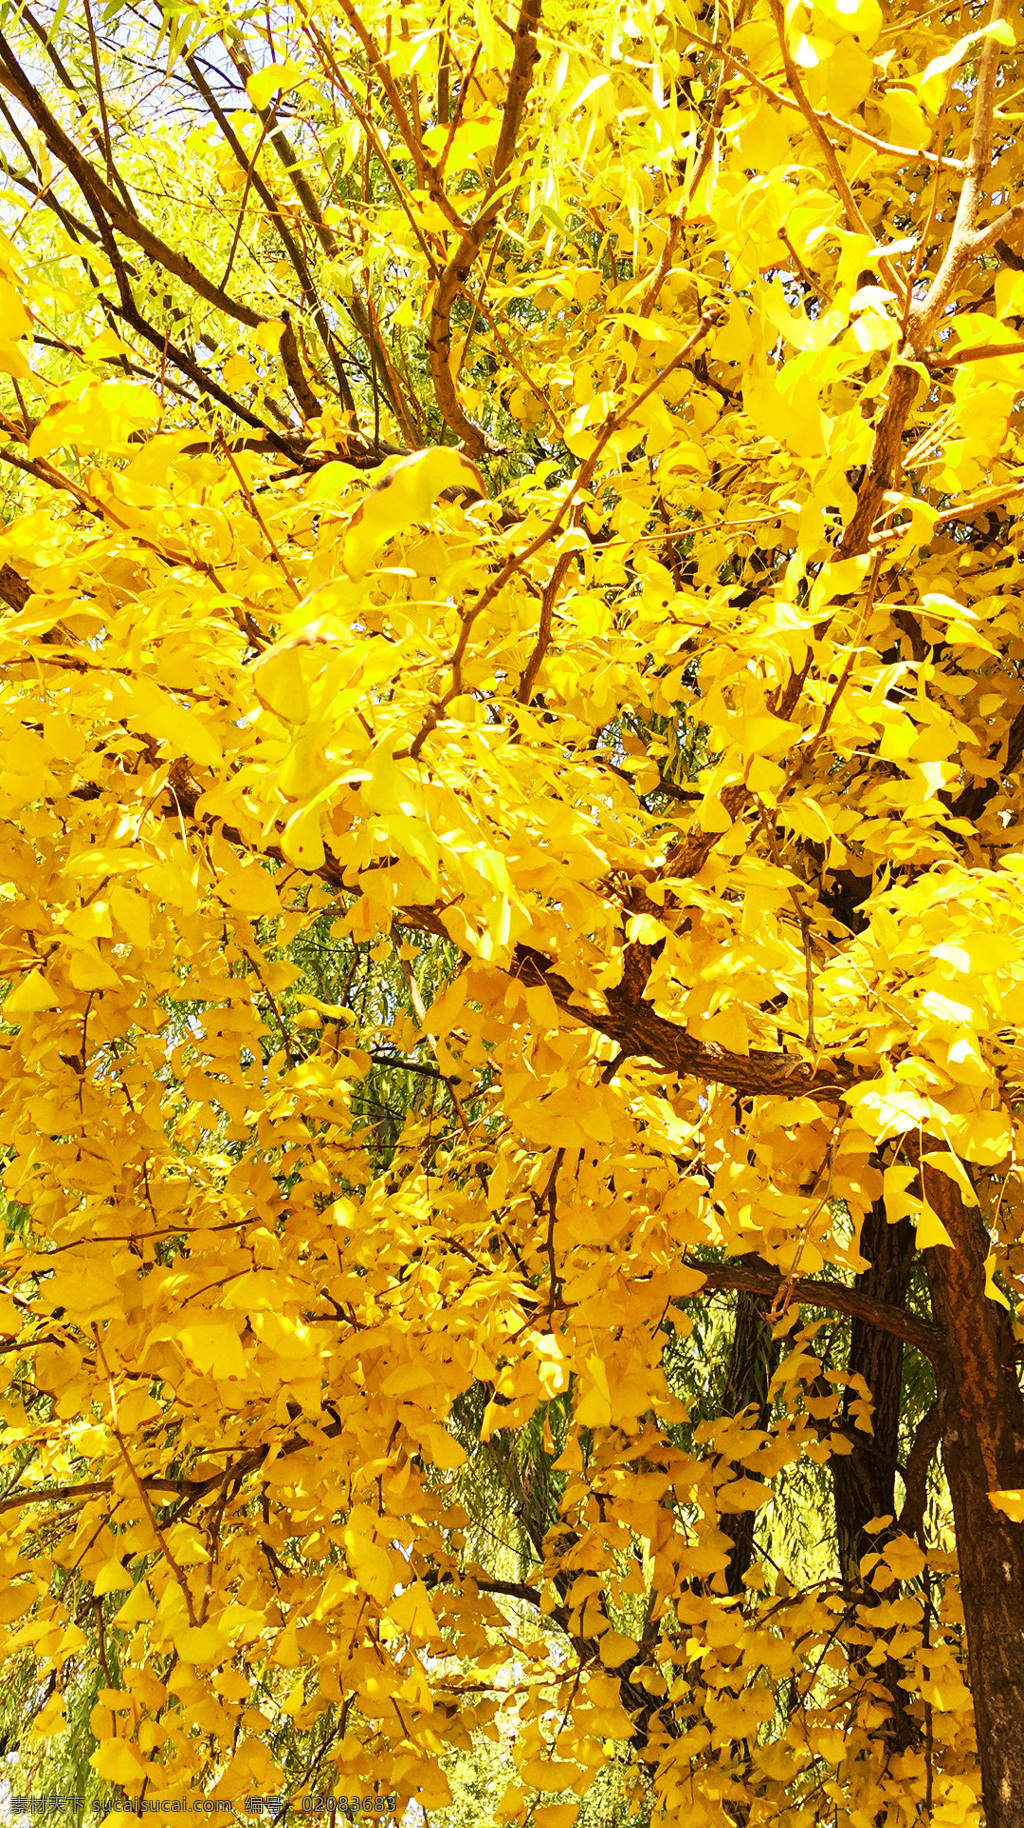 银杏叶 金色叶子 秋天 秋叶 金黄色叶子 自然景观 自然风景